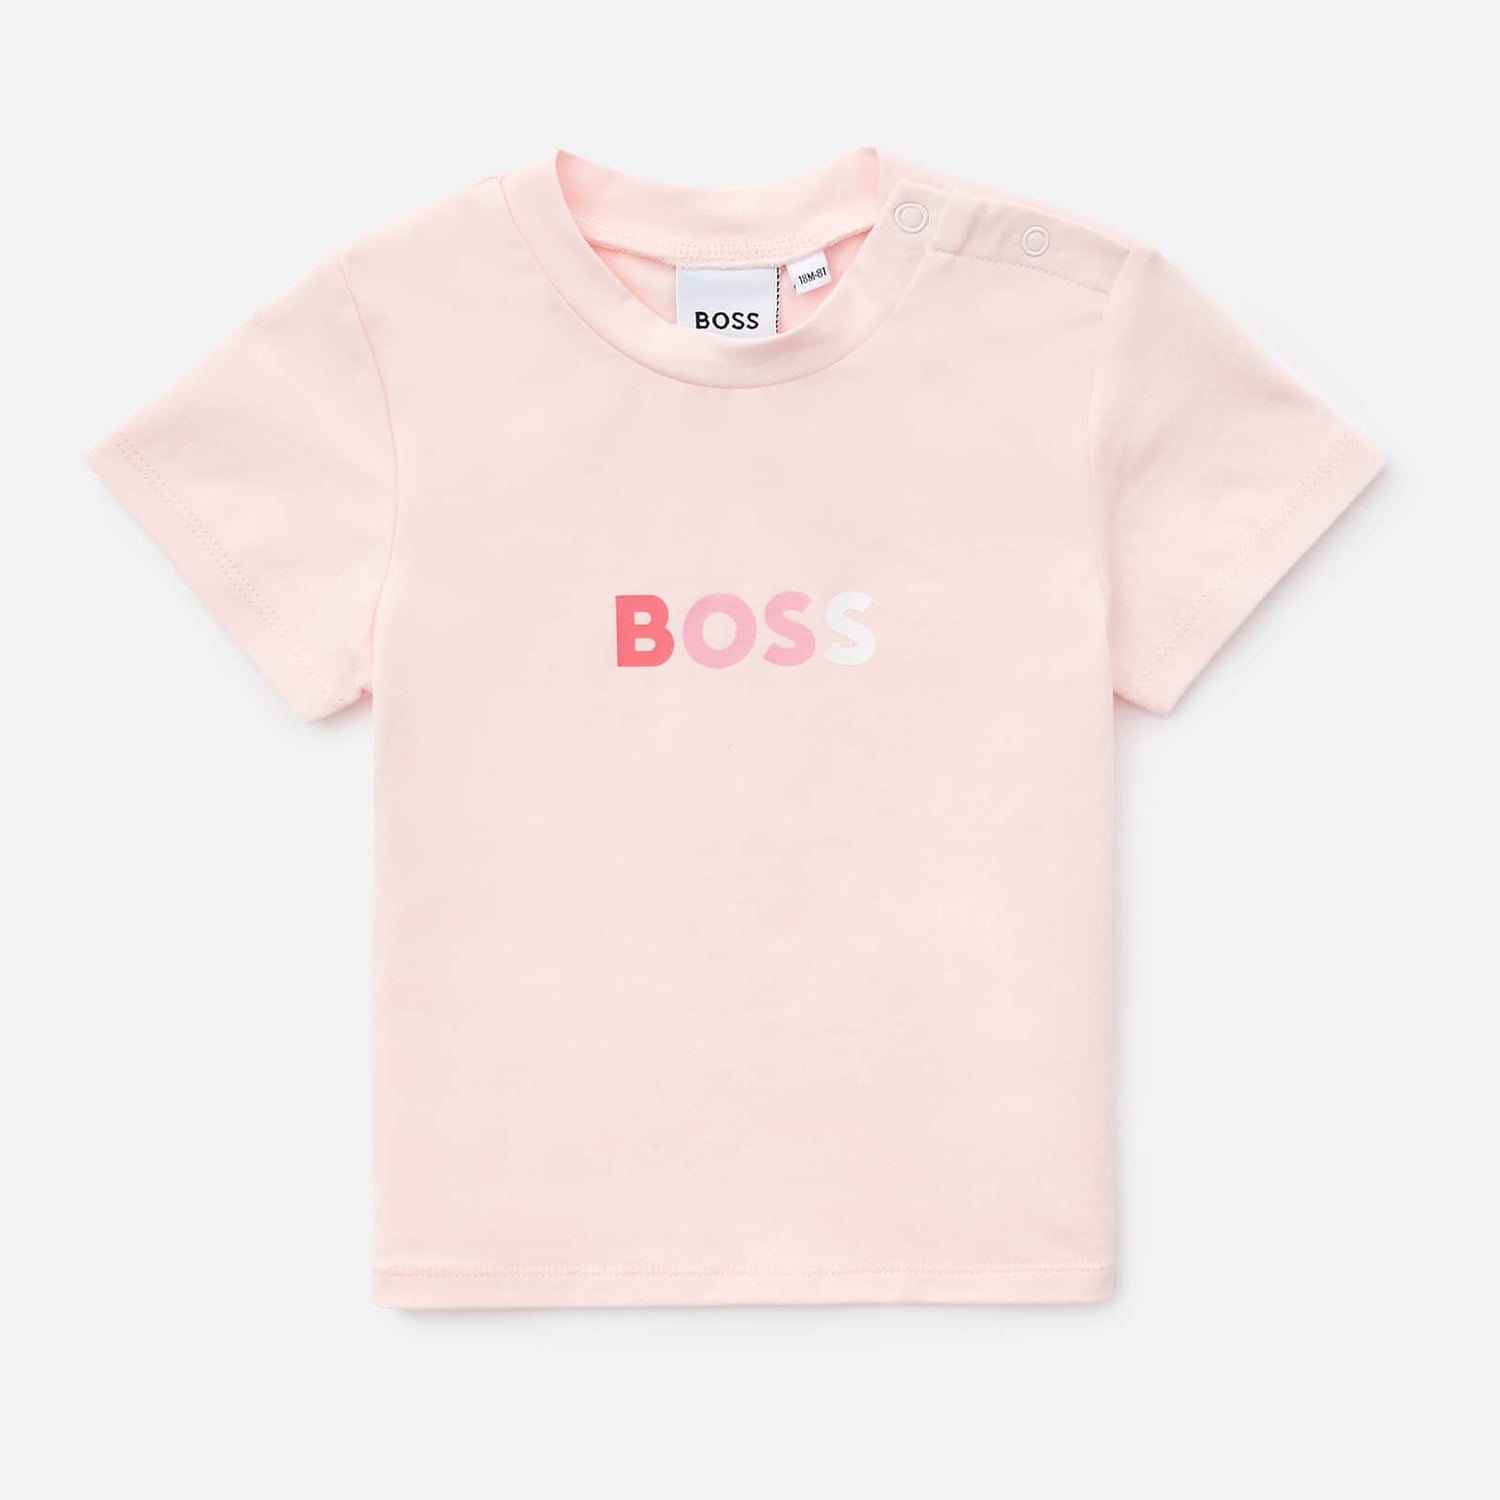 Hugo Boss Girls' Logo BOSS T-Shirt - Pale Pink - 6 Months